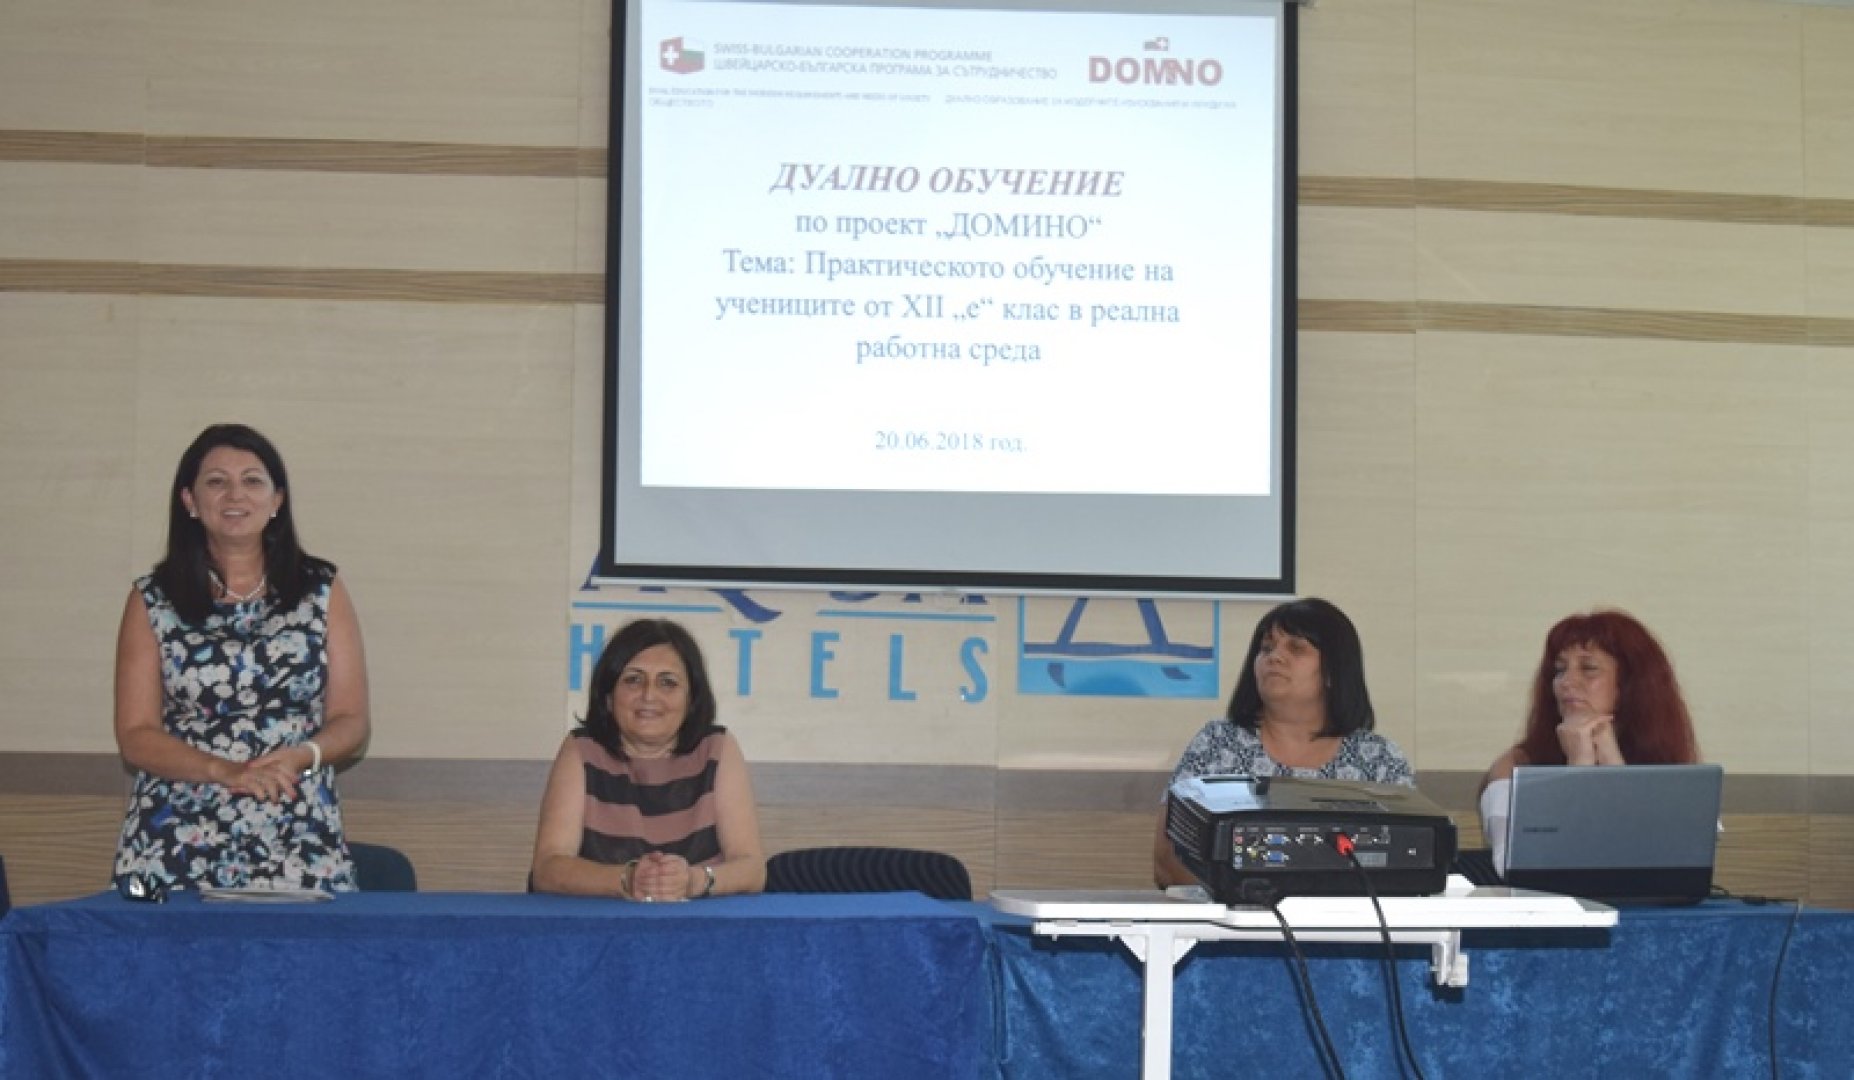 Петя Евтимова - ръководител на Домино (вляво) участва в заключителната пресконференция